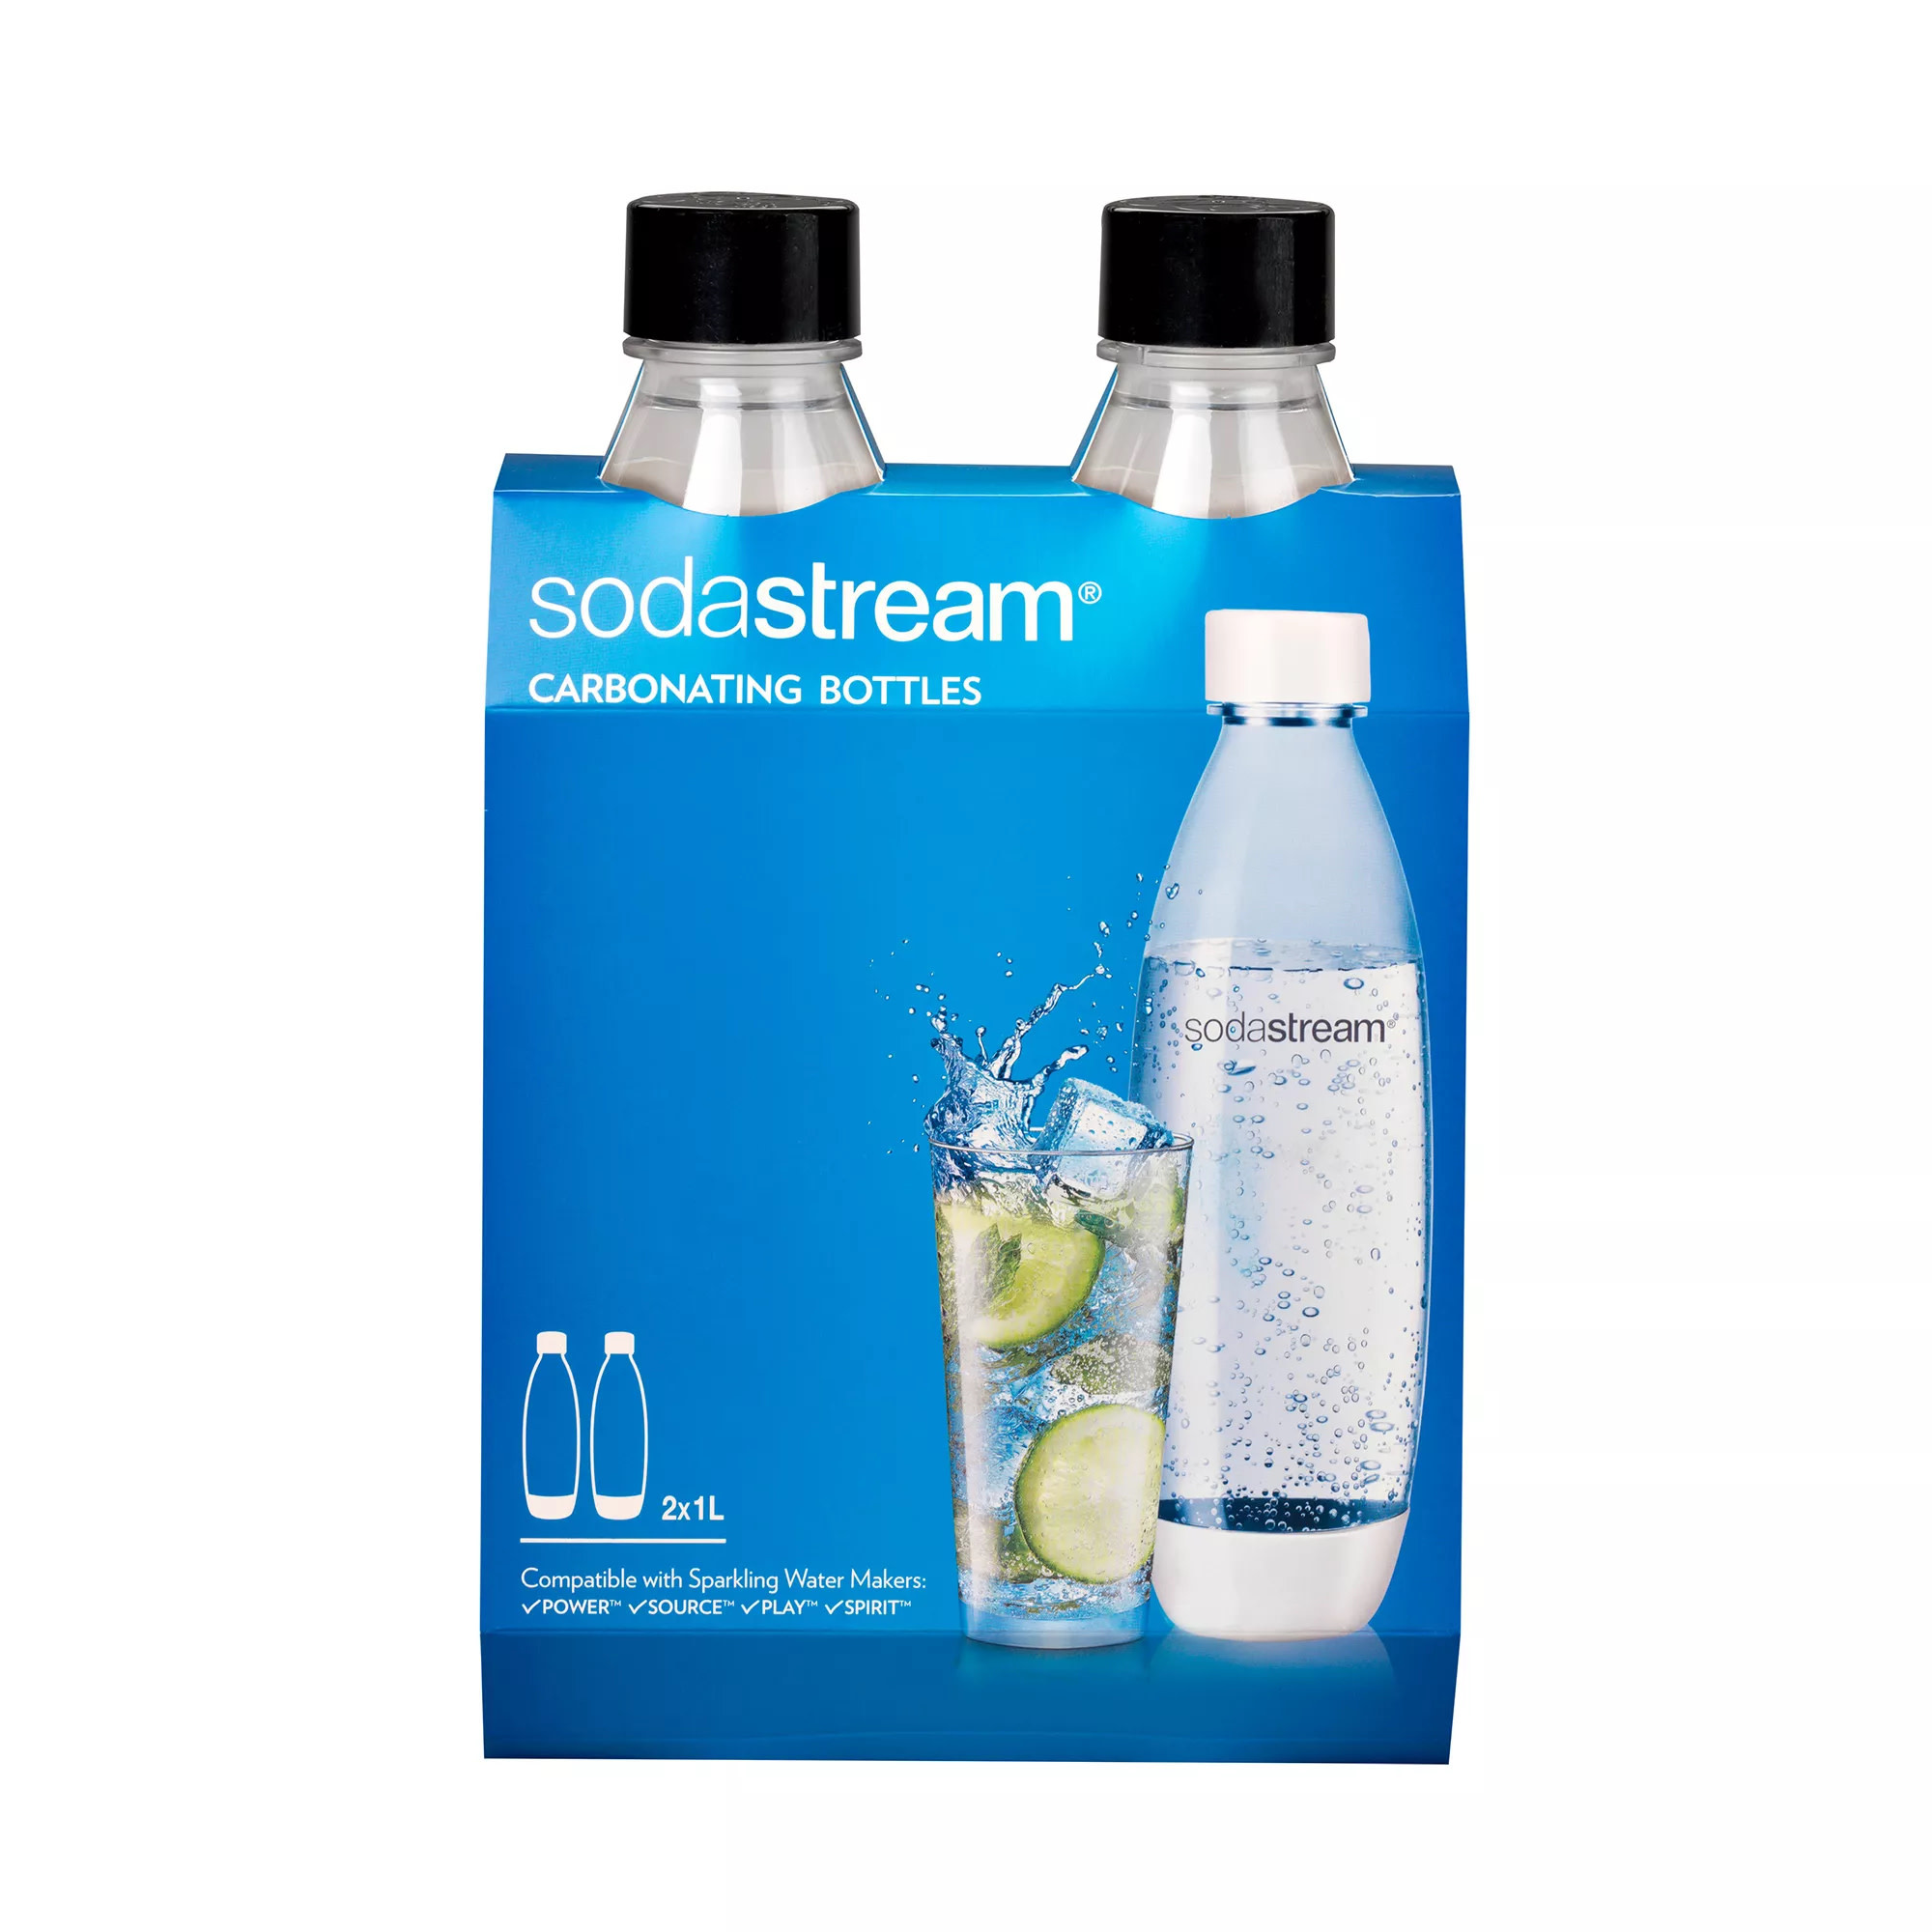 Sodastream 1 liter White Sodastream Bottles set of 2 - Whisk